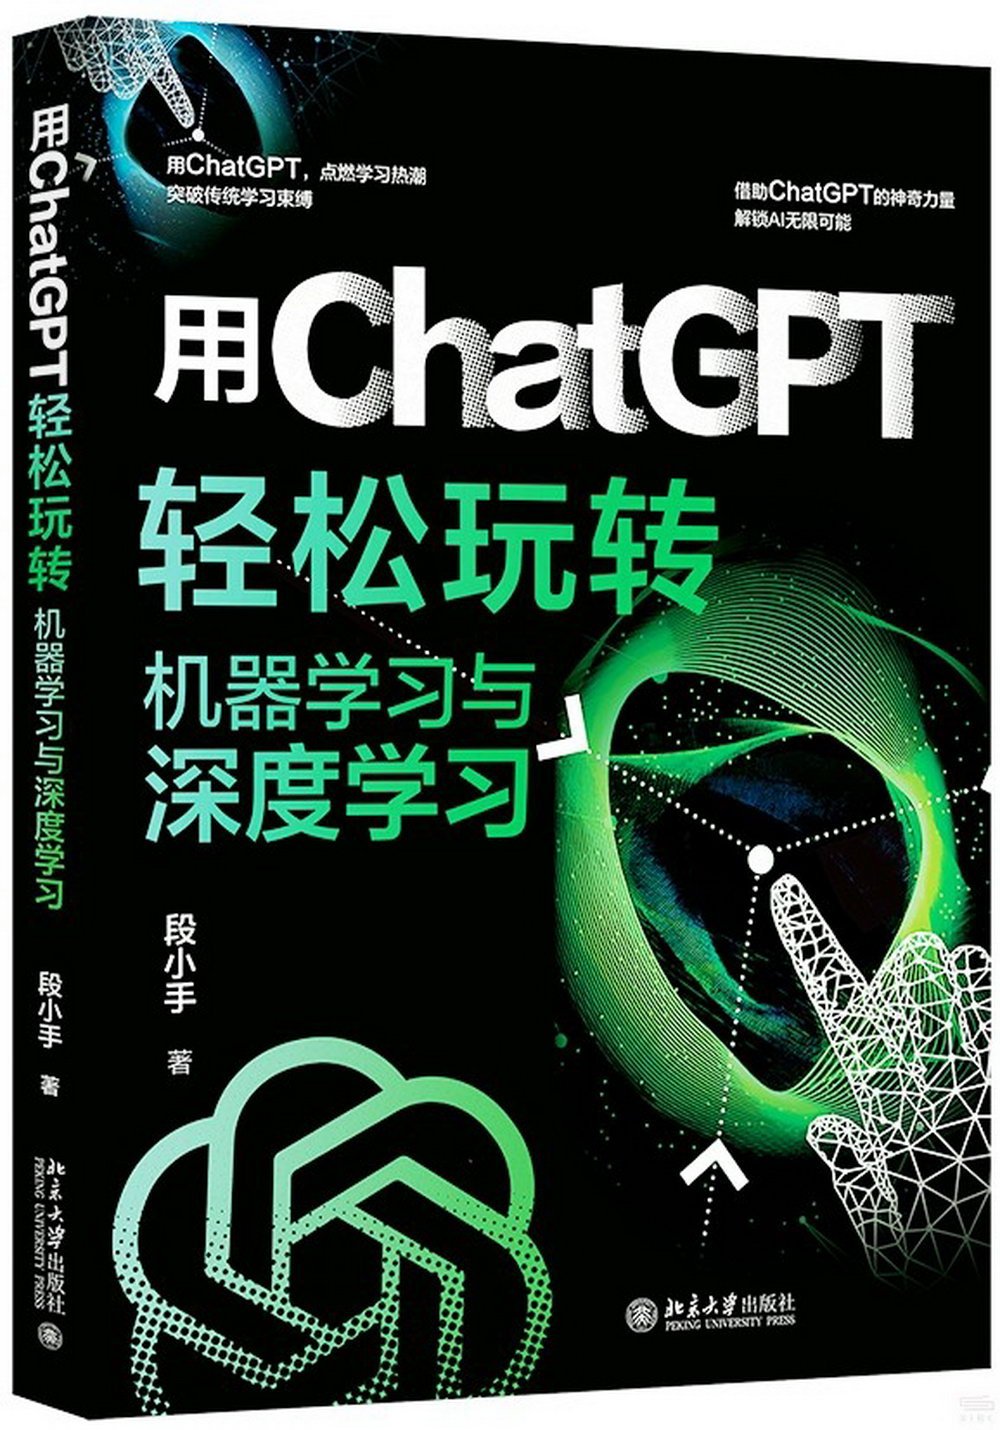 用ChatGPT輕鬆玩轉機器學習與深度學習